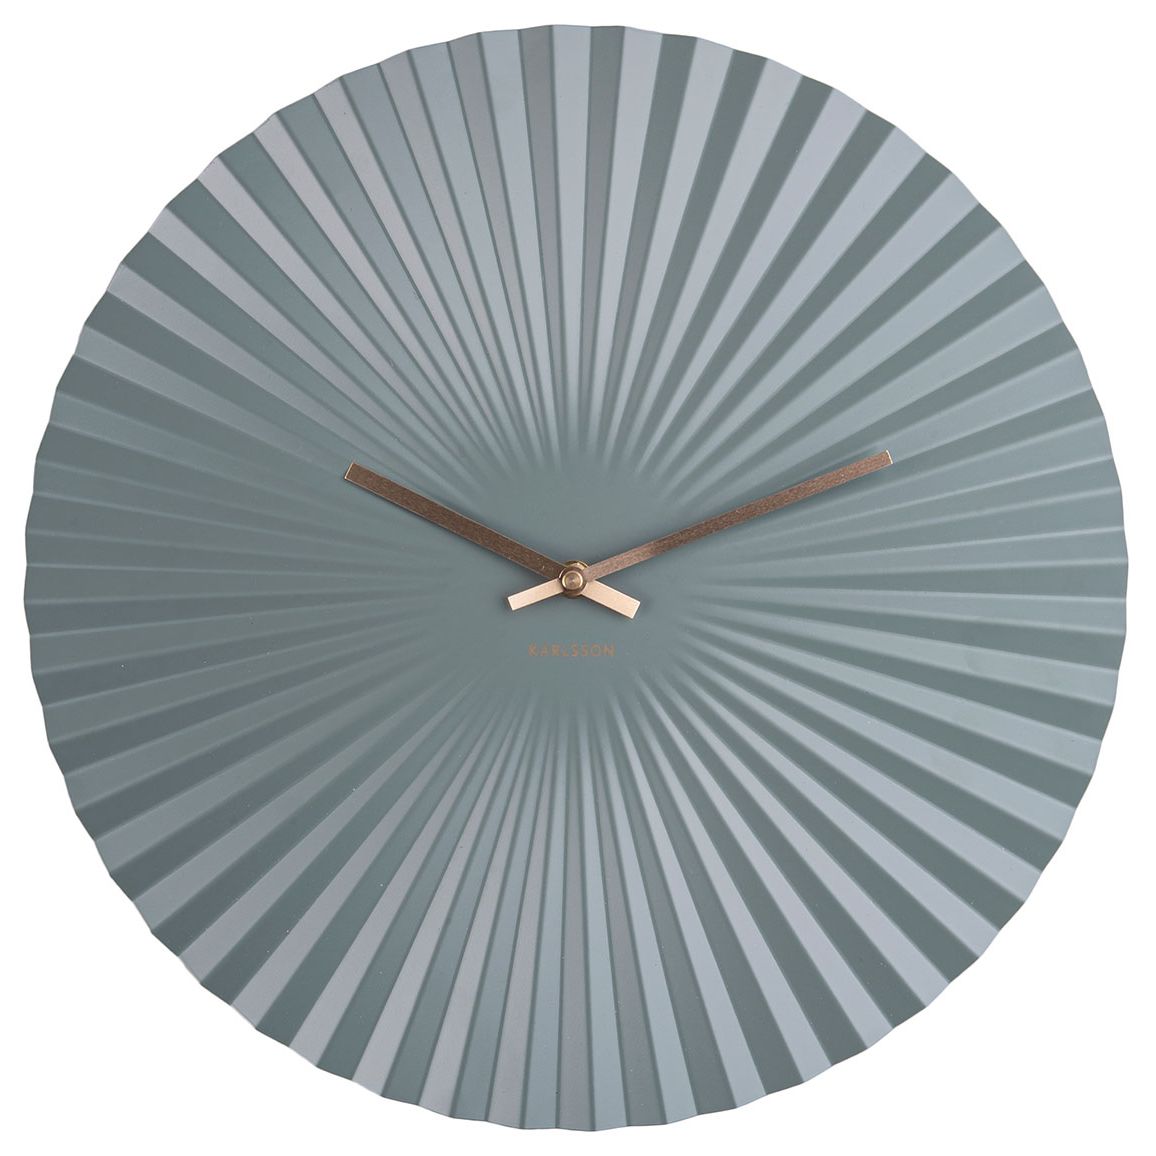 Karlsson Sensu Clock Large Silver